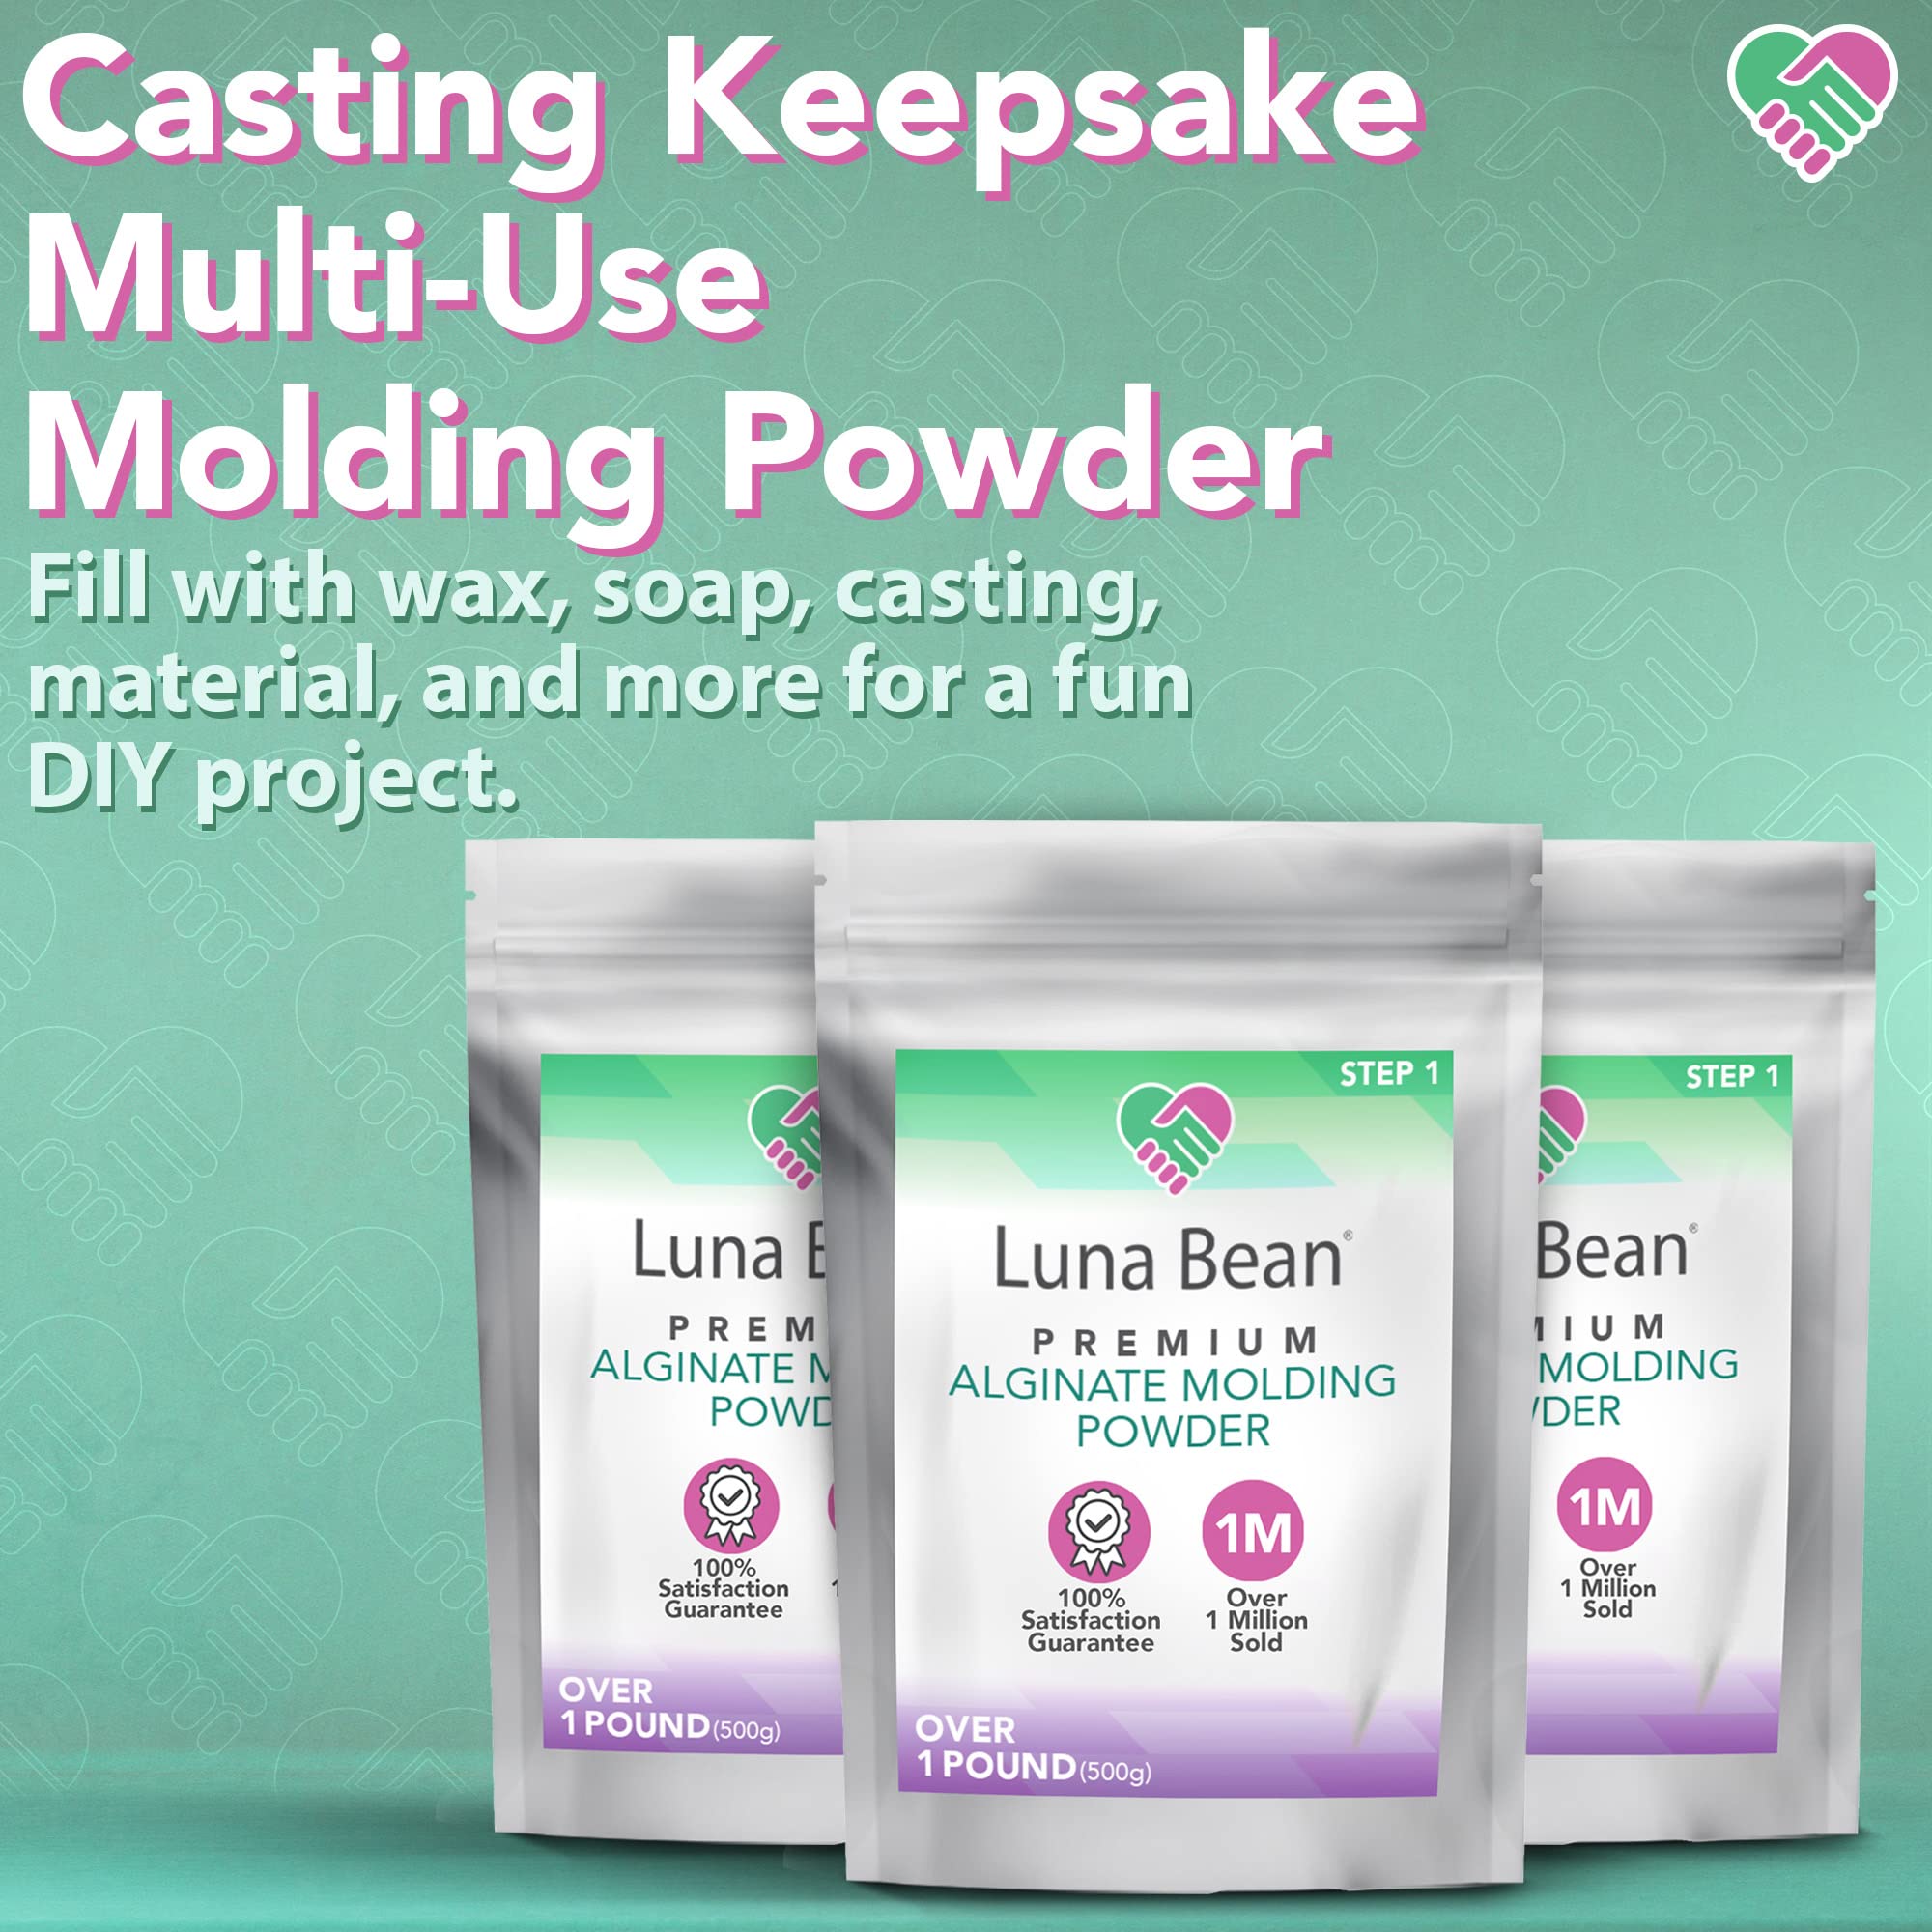 LifeMold Alginate Molding Powder for Hand Casting, Life Casting